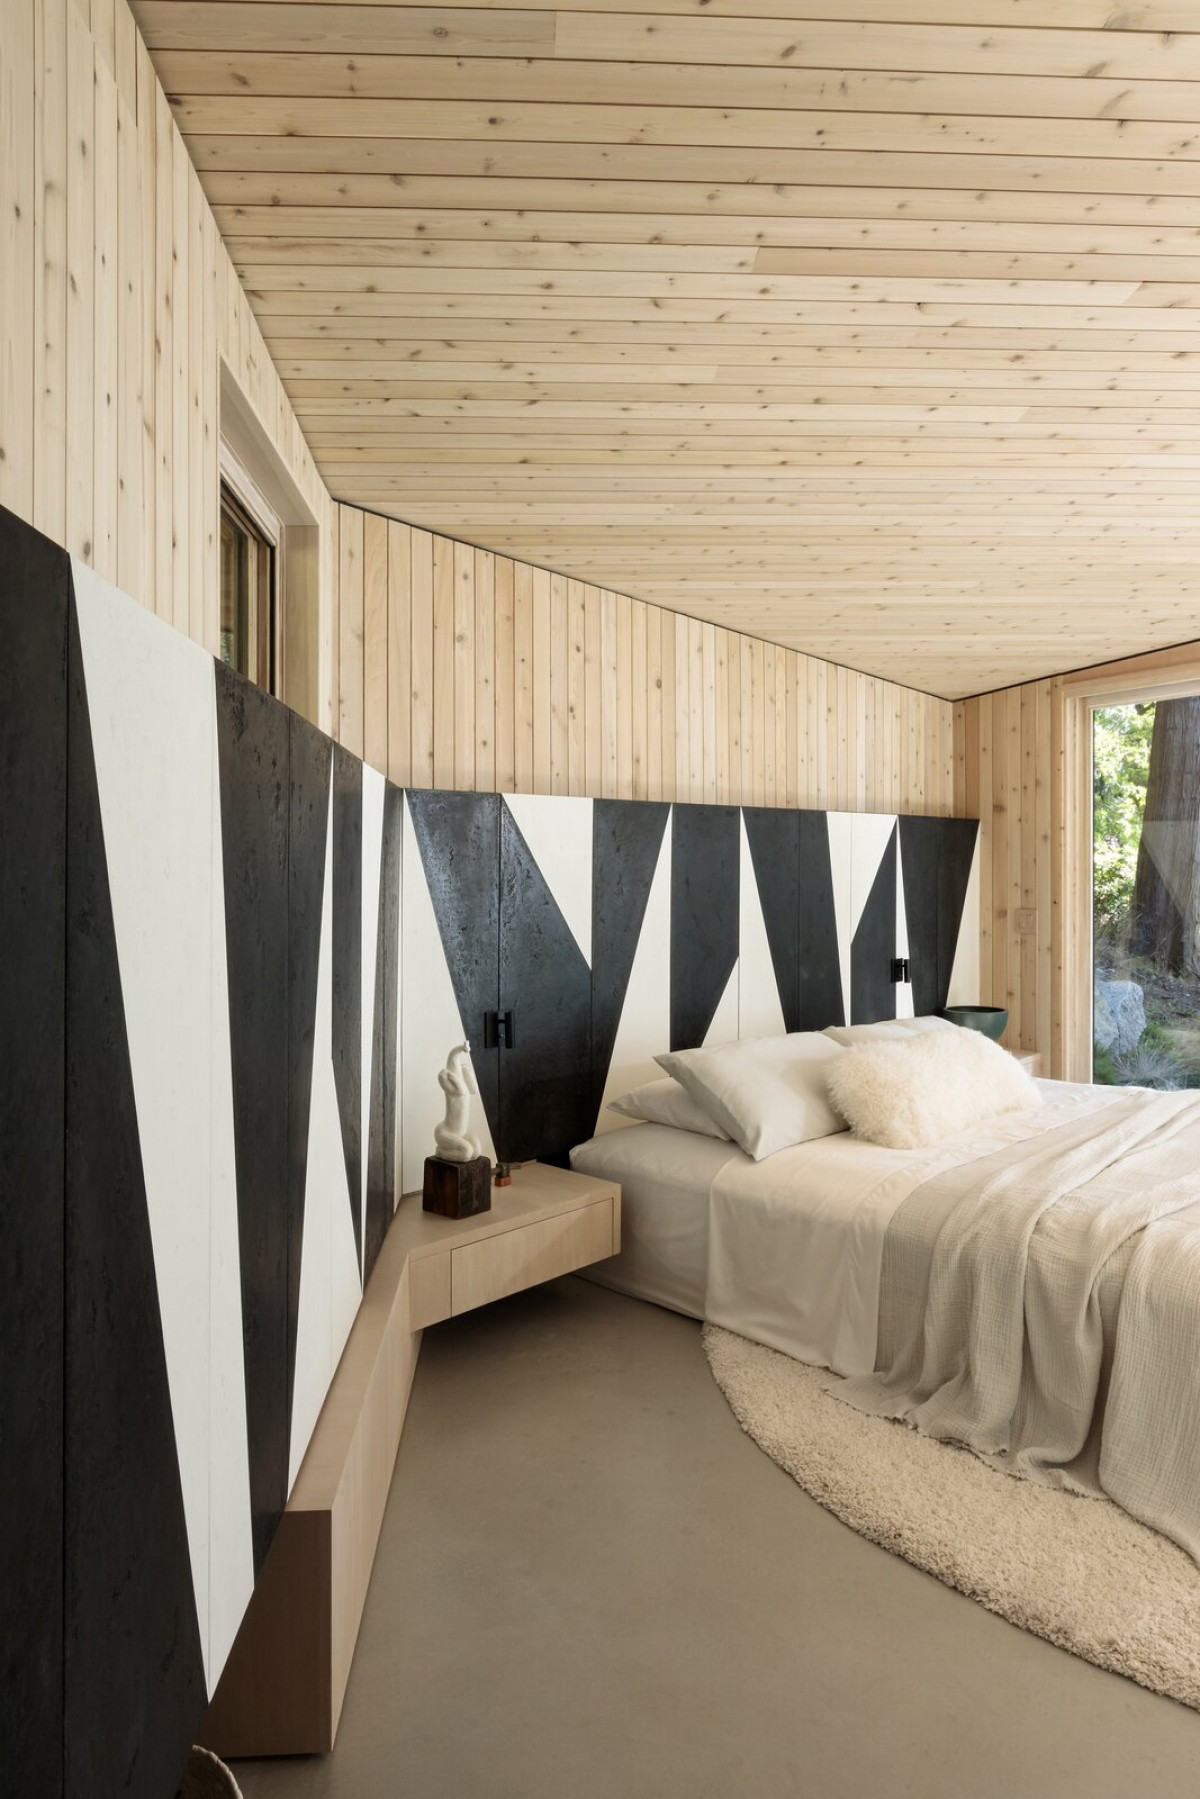 Sự kết hợp hài hòa giữa các vật liệu và màu sắc tự nhiên tự nhiên từ gỗ, ga trải giường, thảm sàn.